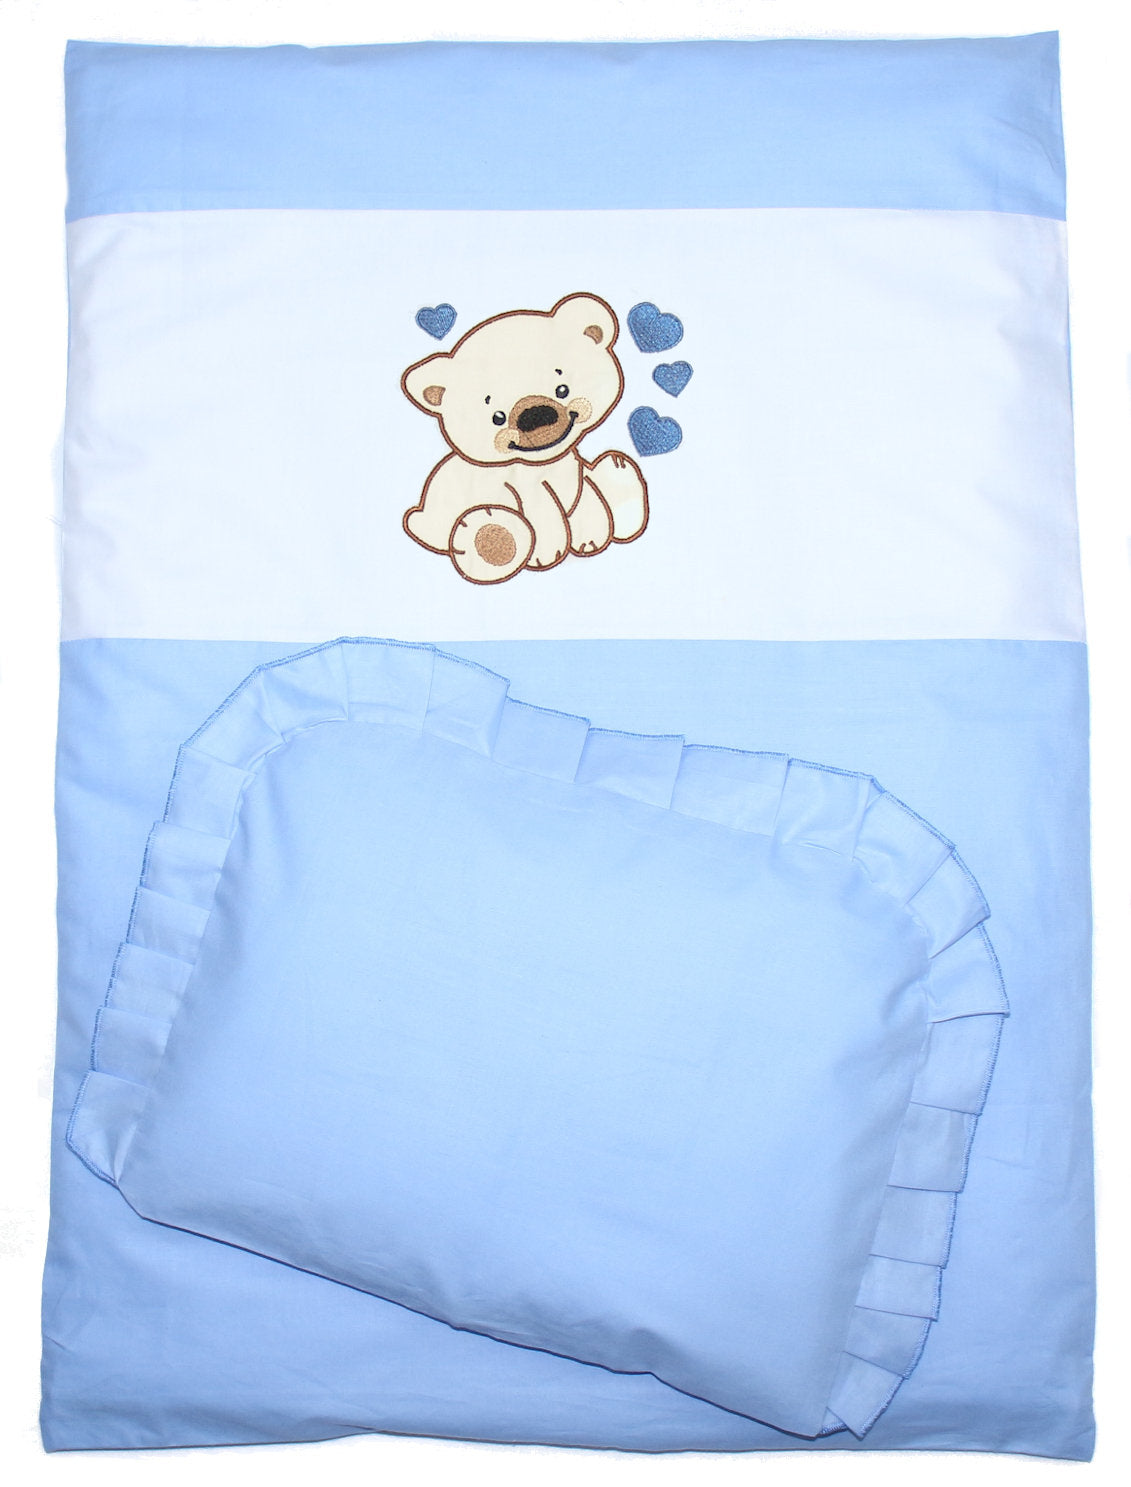 2- 4tlg Kinderwagenset - Bärchen mit Herzen - Blau - Bettwäsche für Kinderwagen Bezüge Decke Kissen